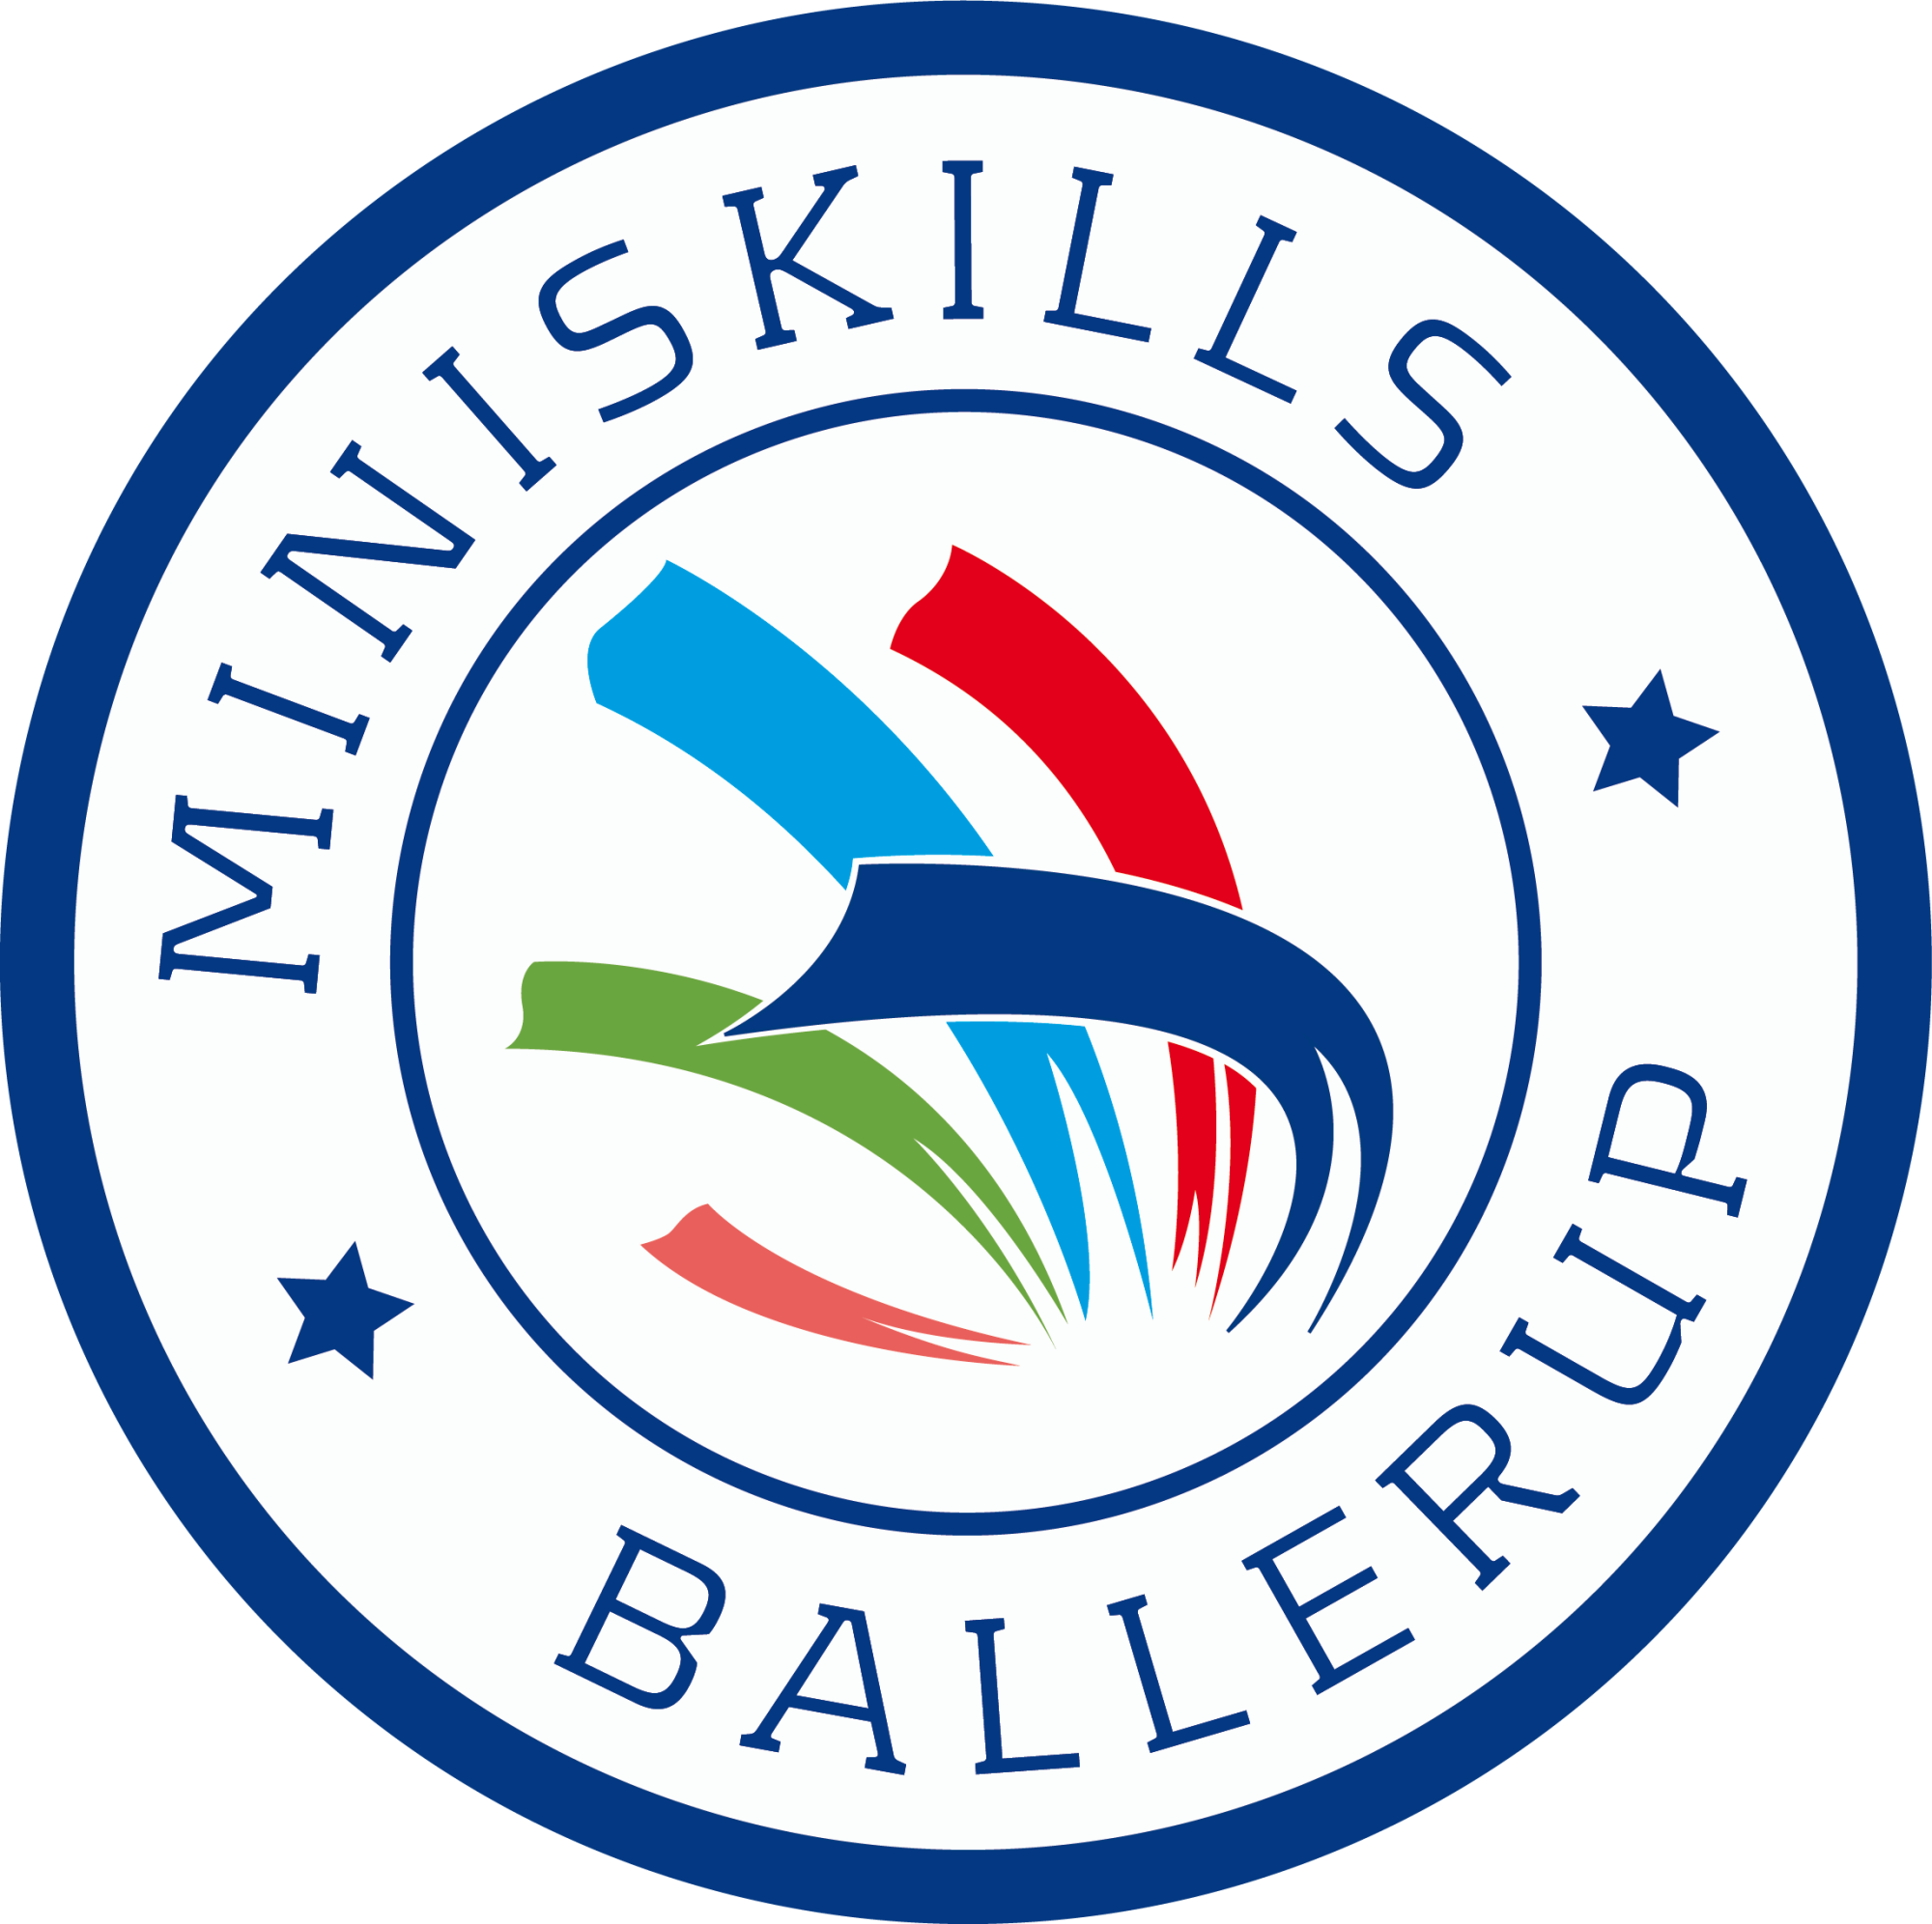 Mini Skills Ballerup logo